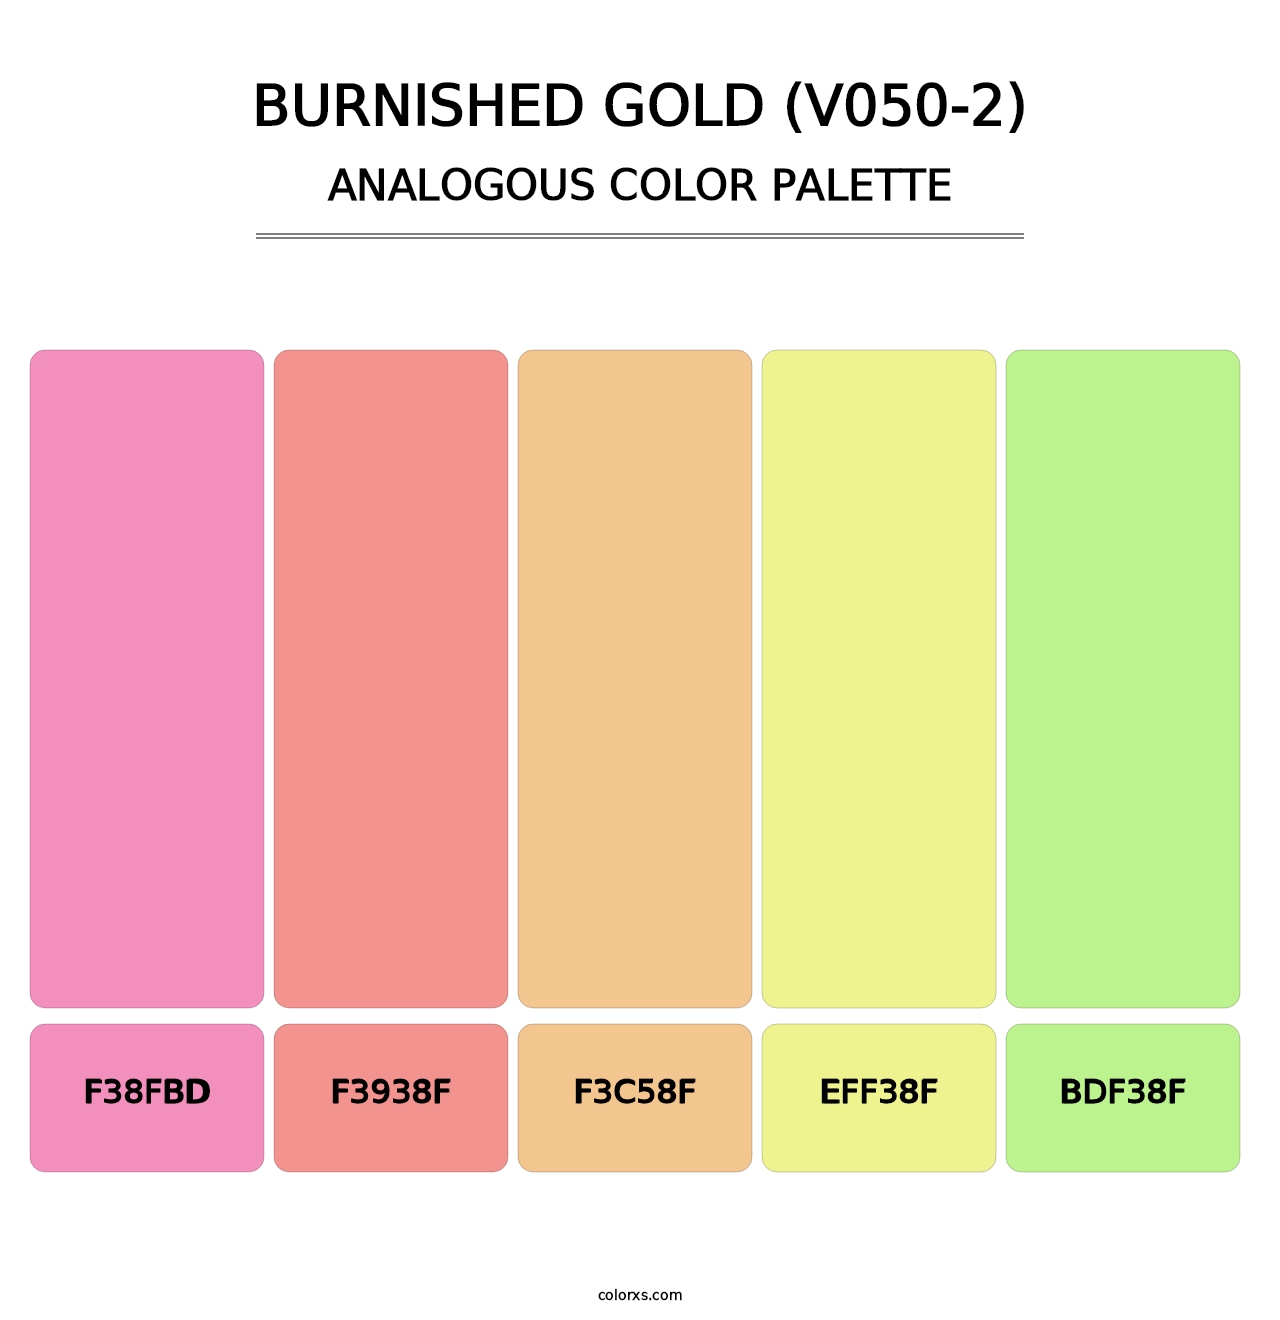 Burnished Gold (V050-2) - Analogous Color Palette